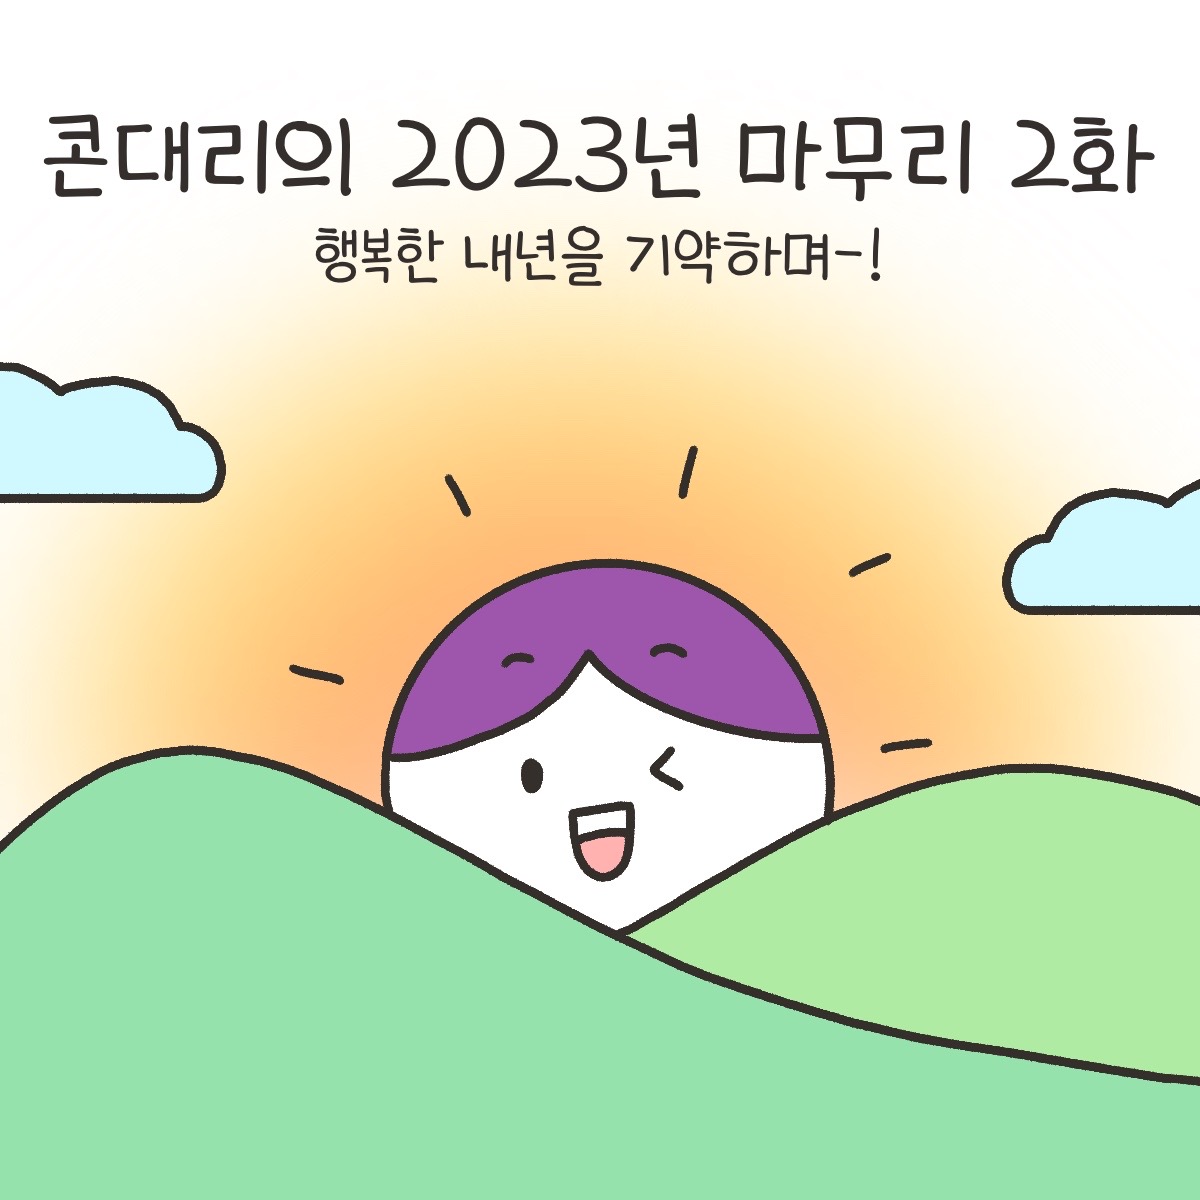 콘대리의 2023년 마무리 2화
행복한 내년을 기약하며-!